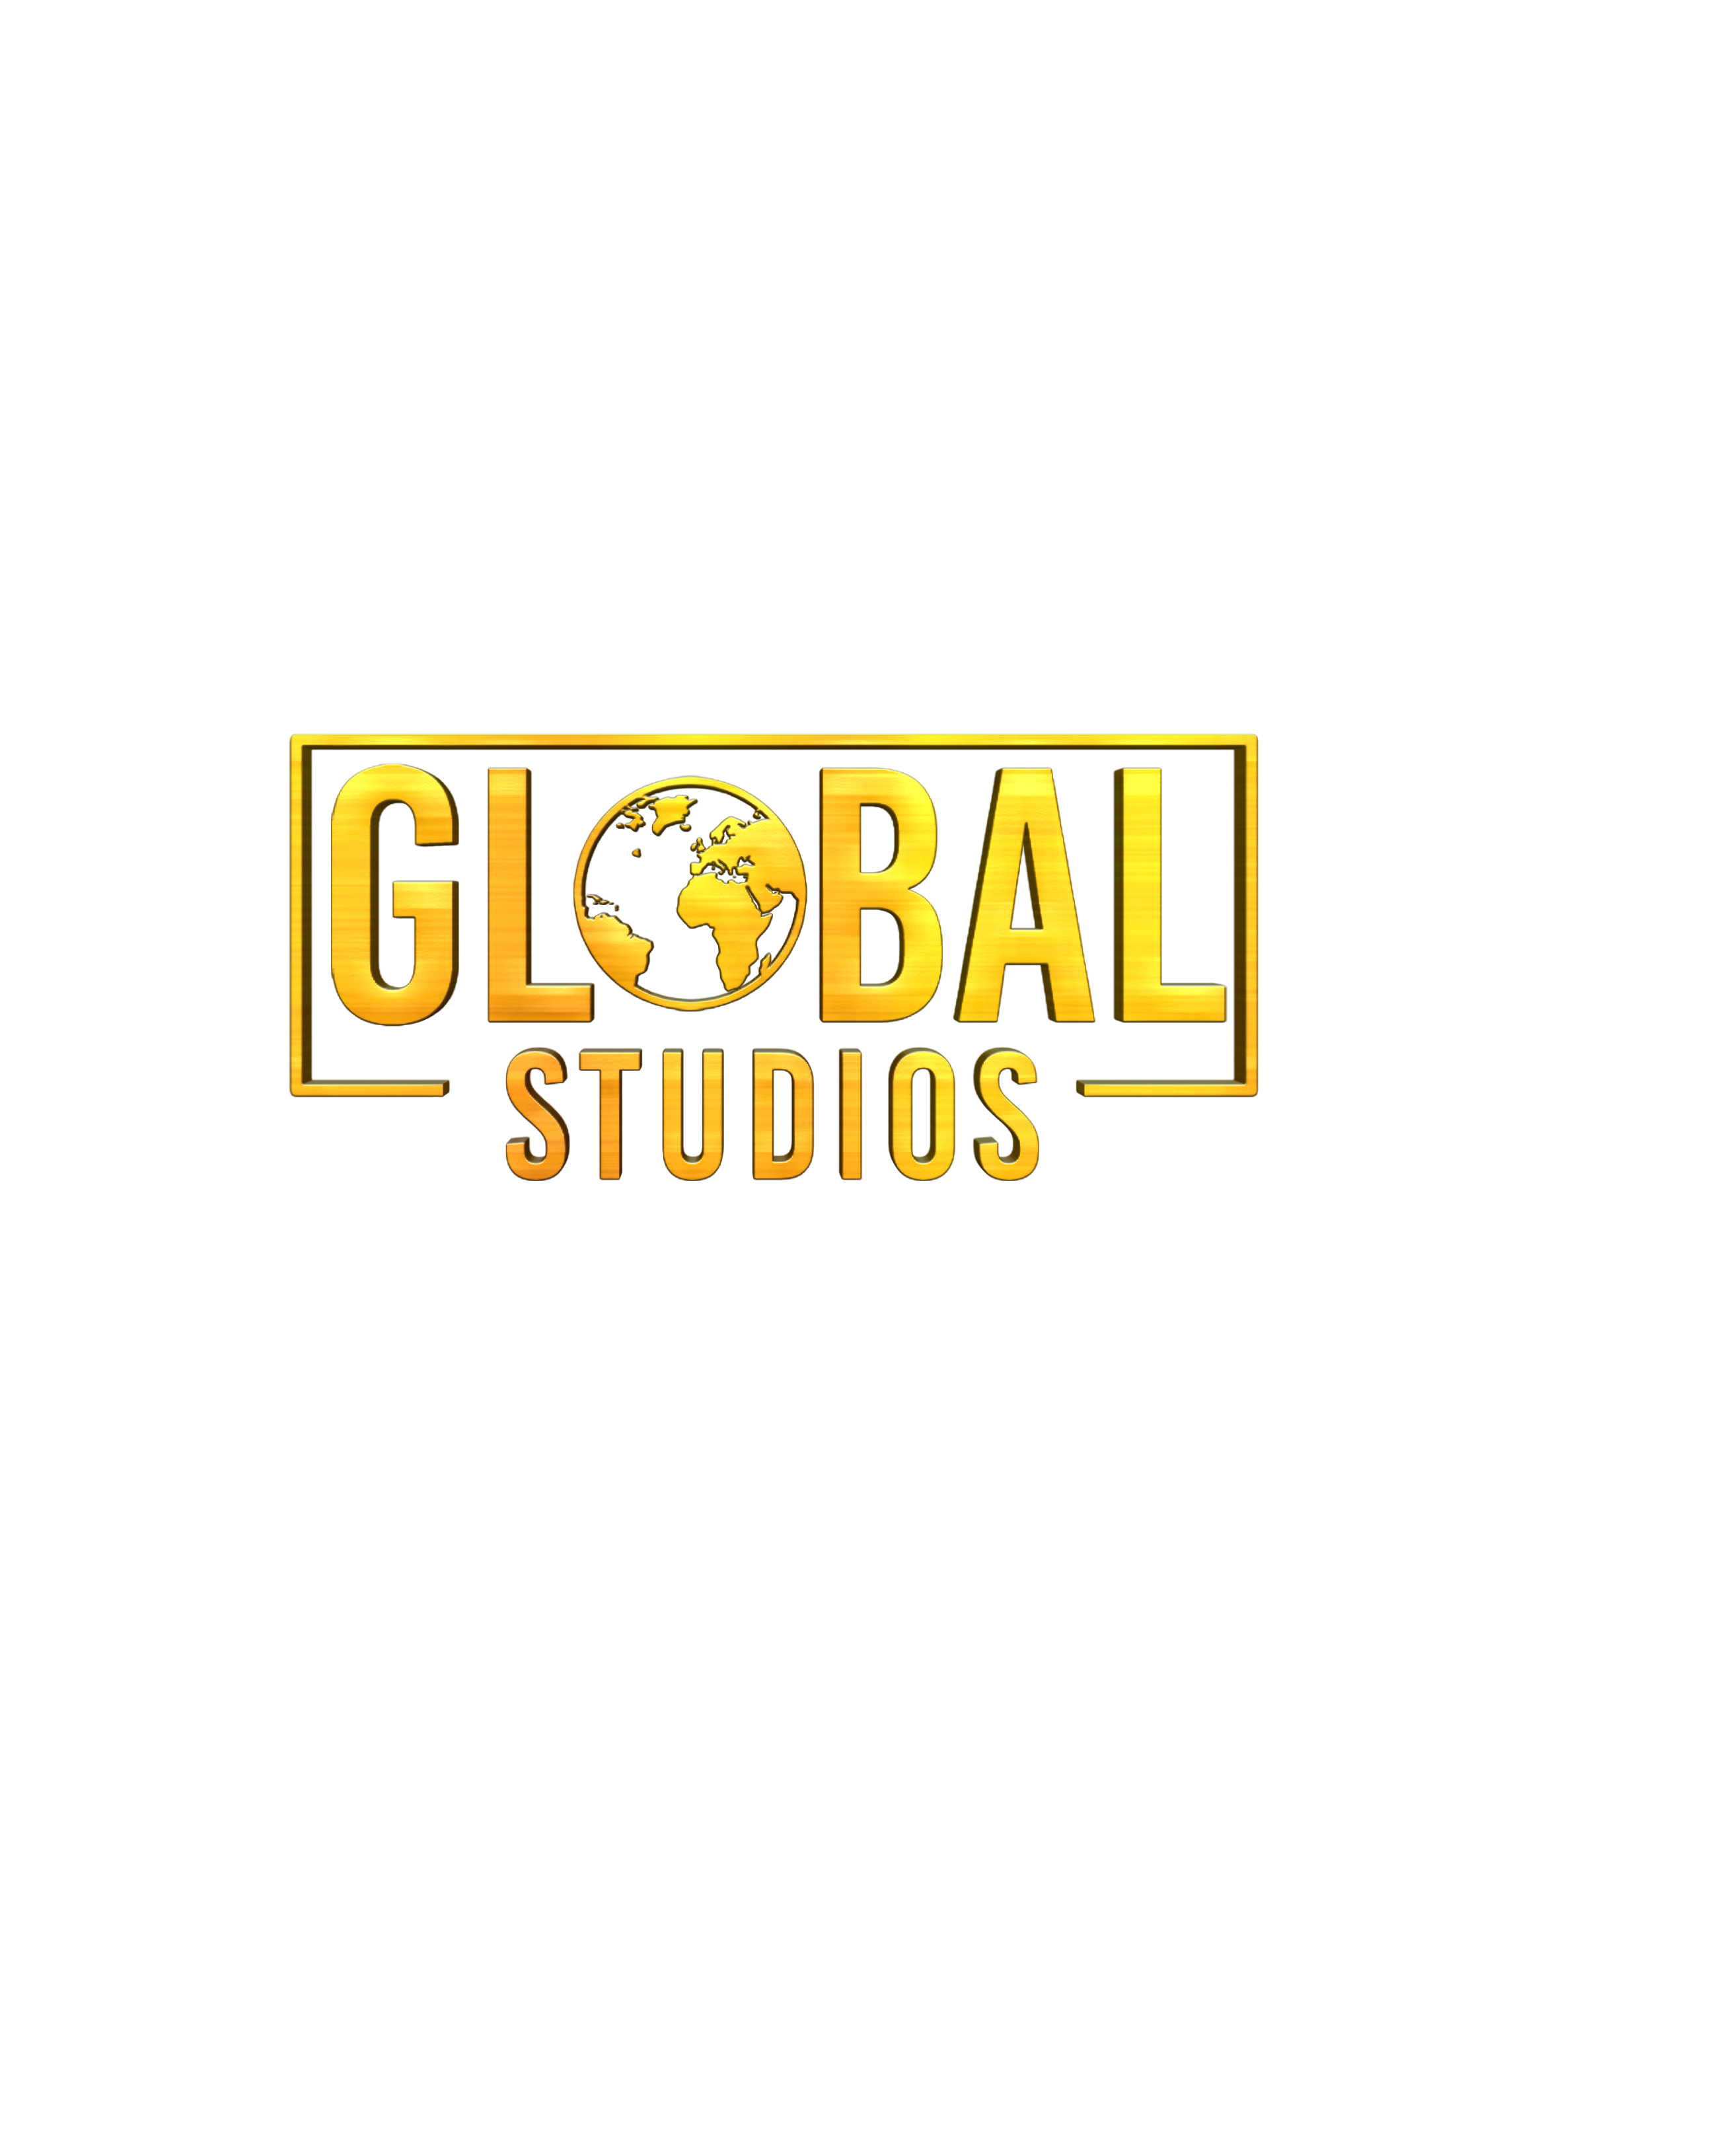 Global Studios Inc